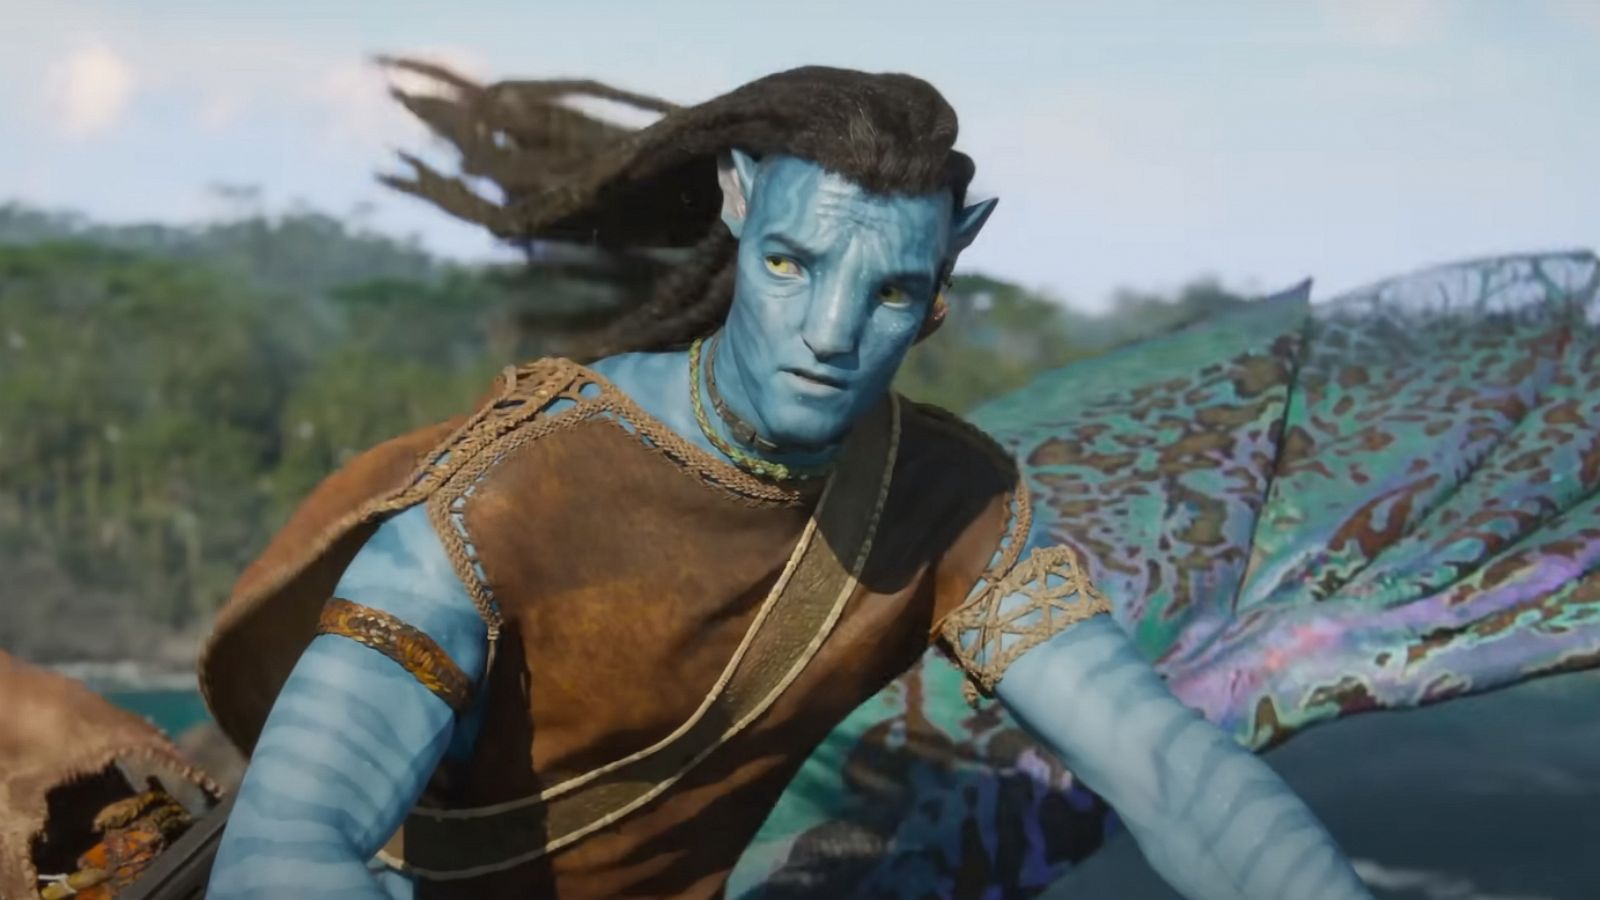 Doanh thu toàn cầu phim Avatar đạt gần 14 tỷ USD sau 2 tuần công chiếu   Báo An Giang Online